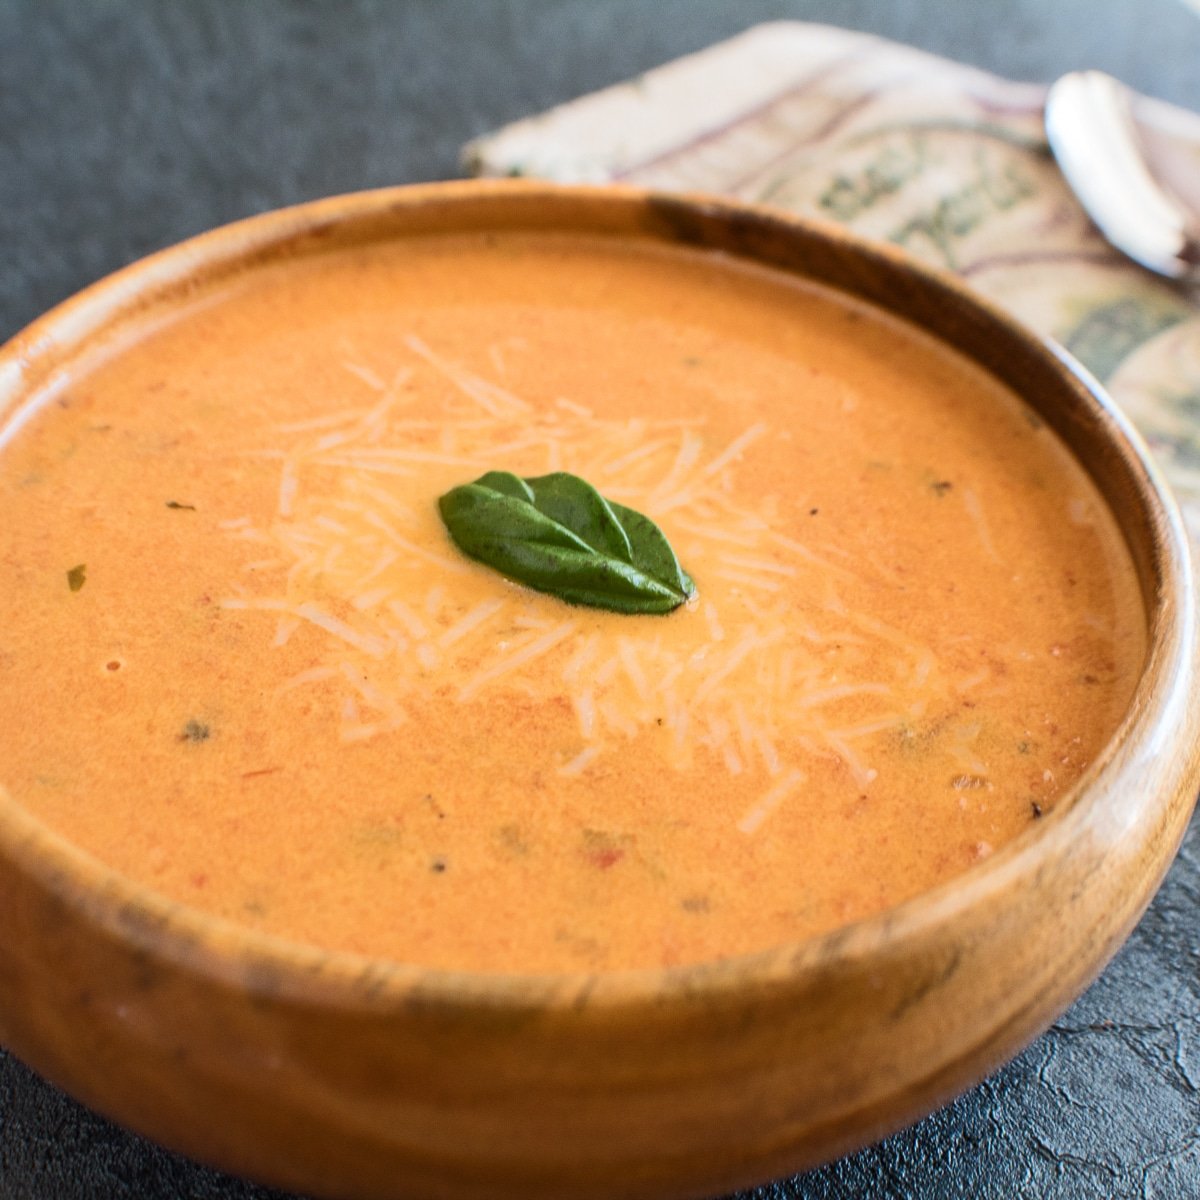 Супер кремообразна супа от печен доматен босилек, поднесена в дървена купа.